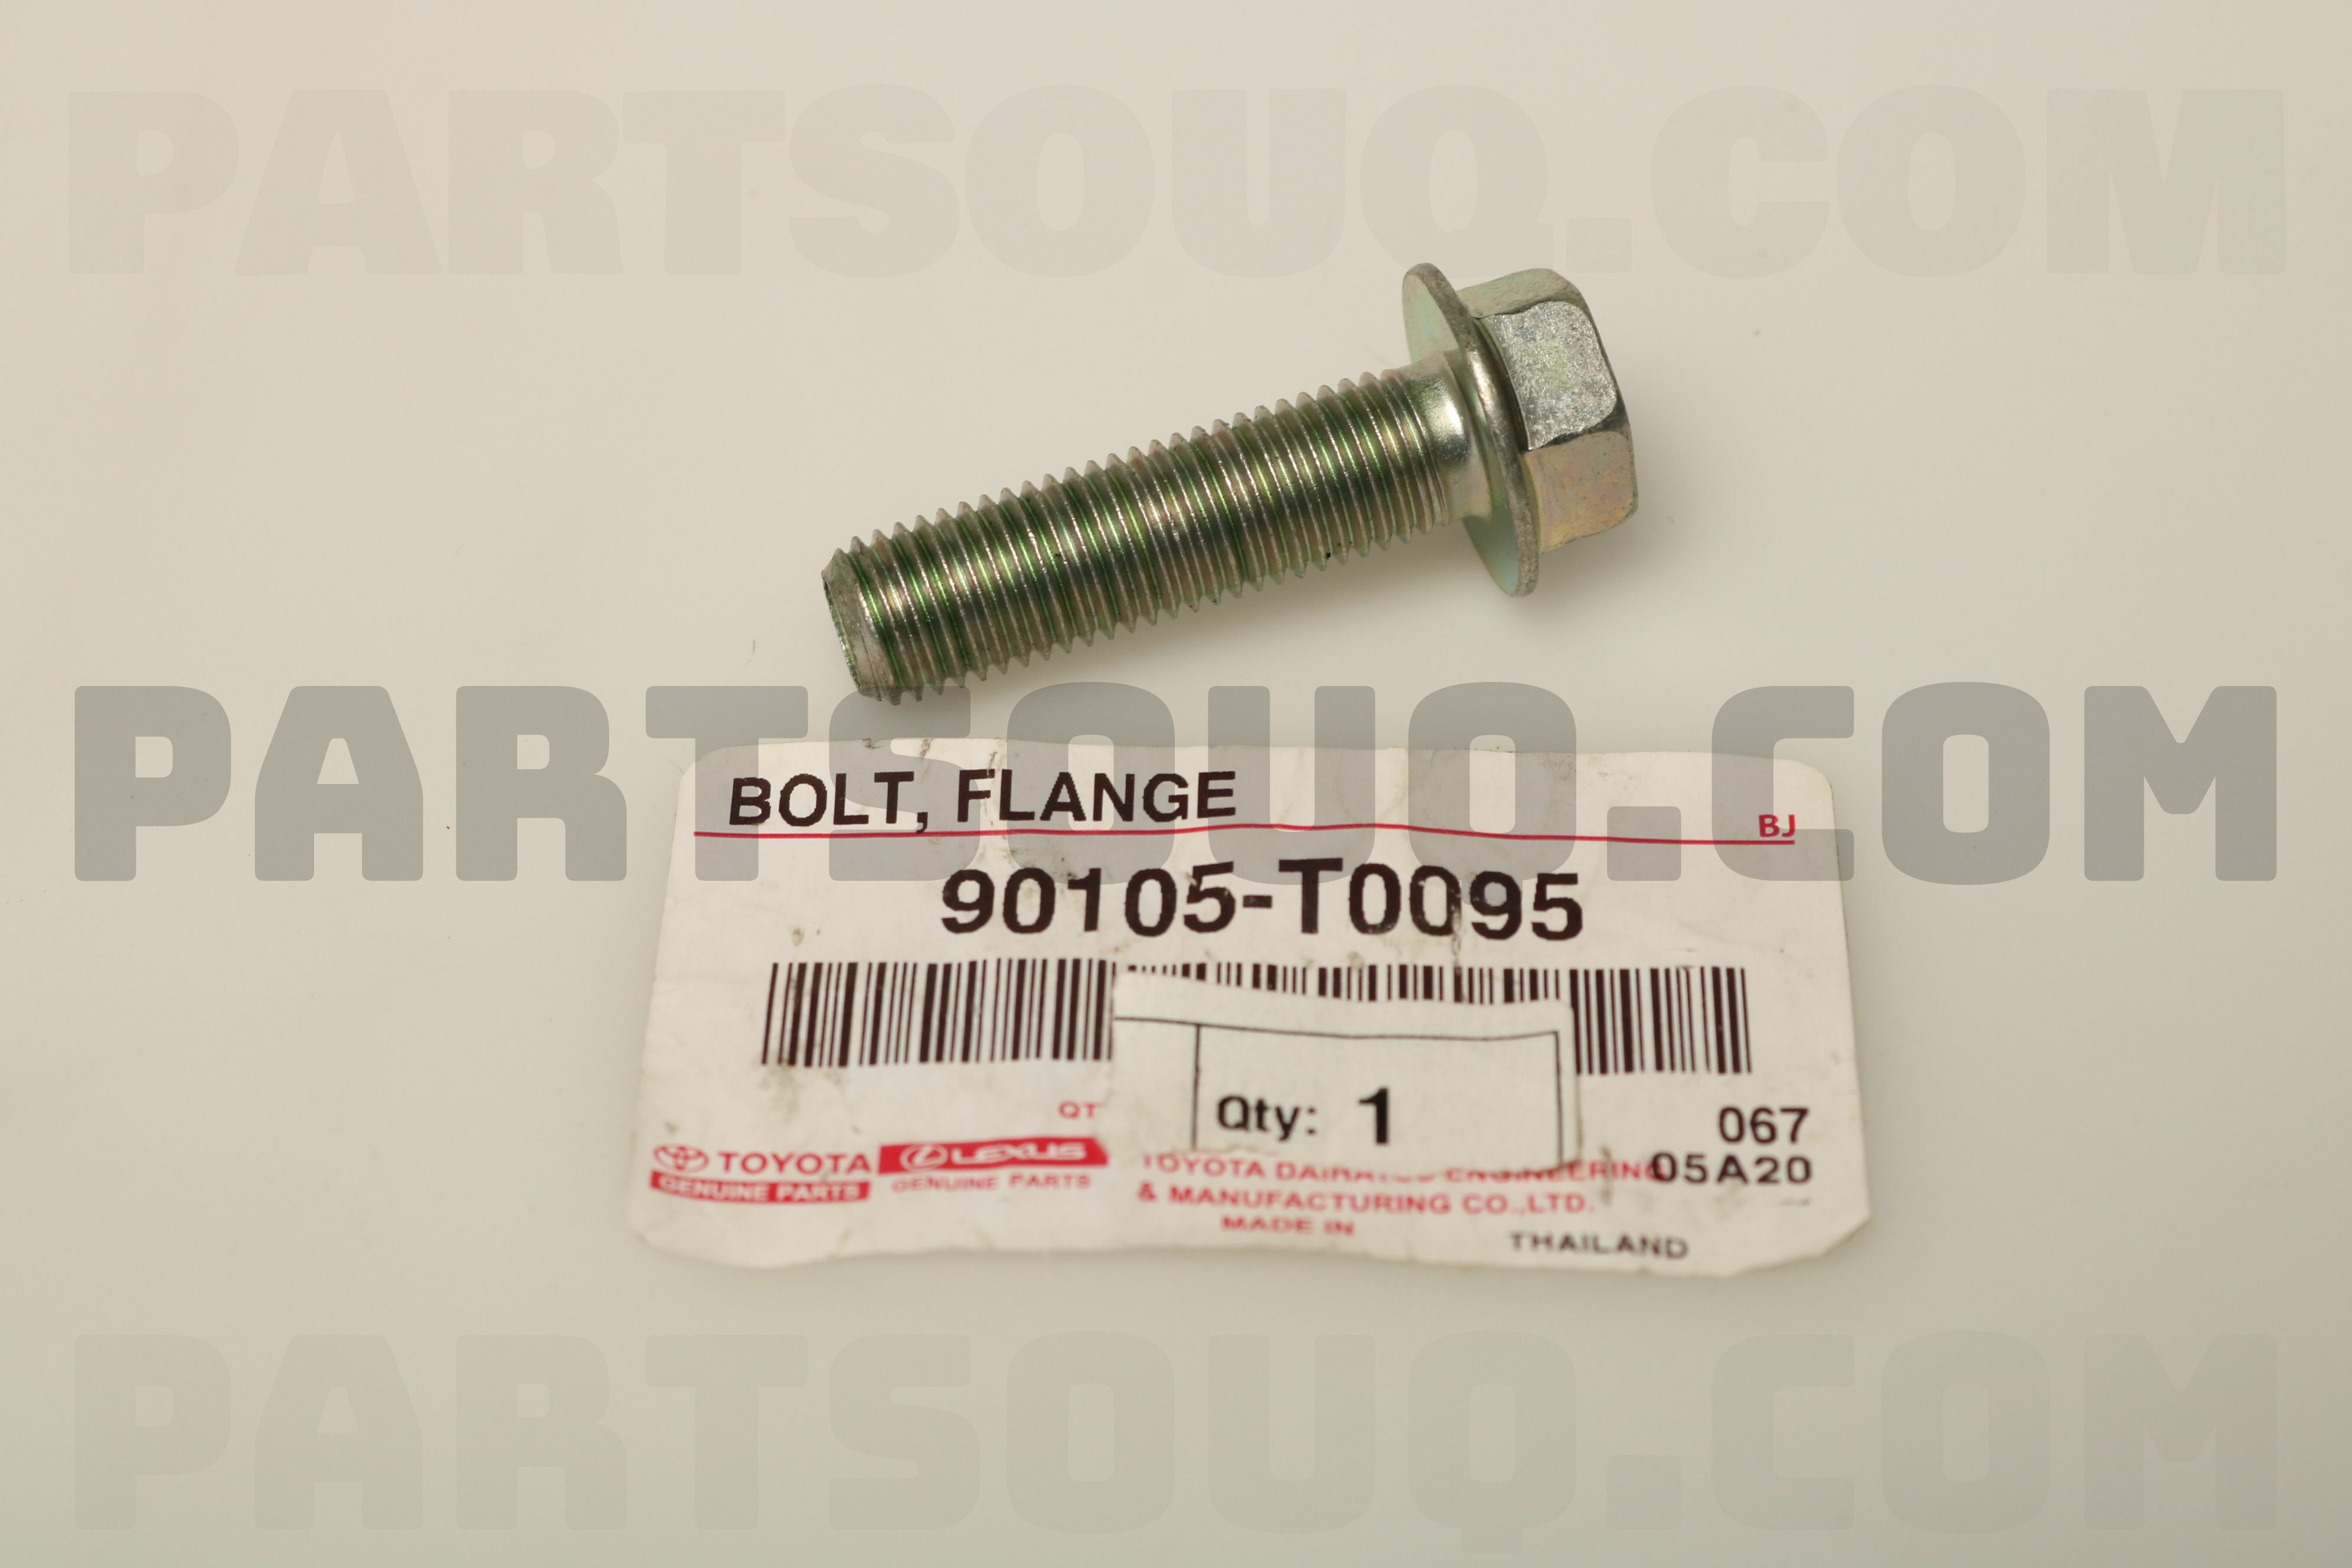 BOLT, FLANGE 90105T0095 | Toyota Parts | PartSouq